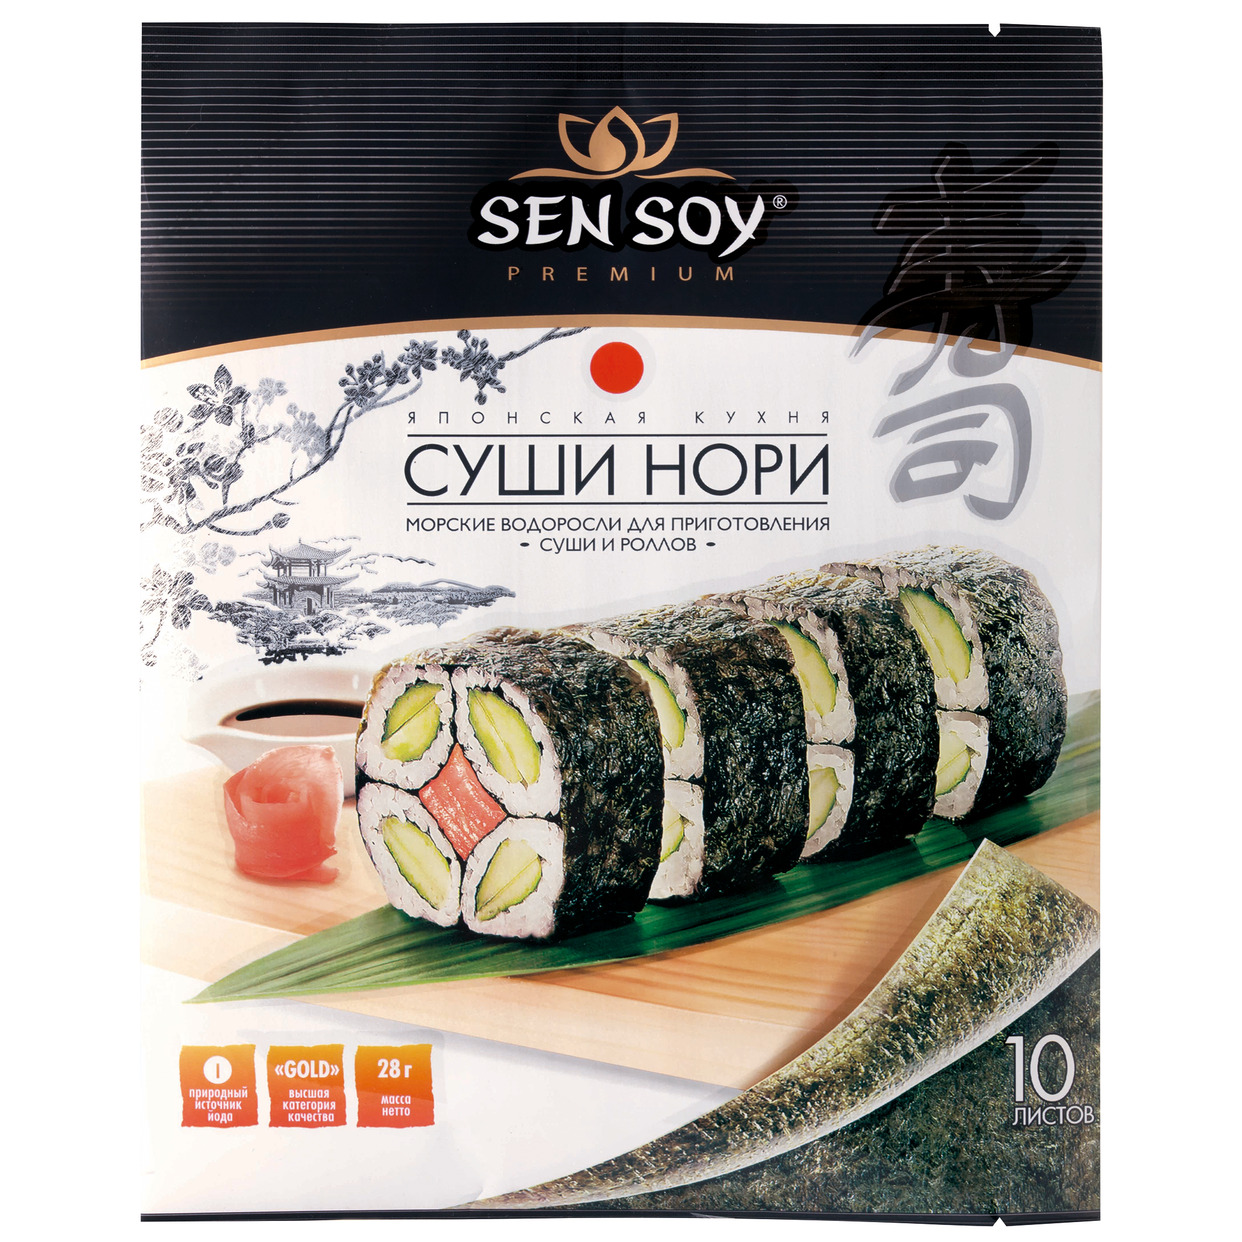 Водоросли Sen Soy Premium Суши Нори морские 28 г по акции в Пятерочке